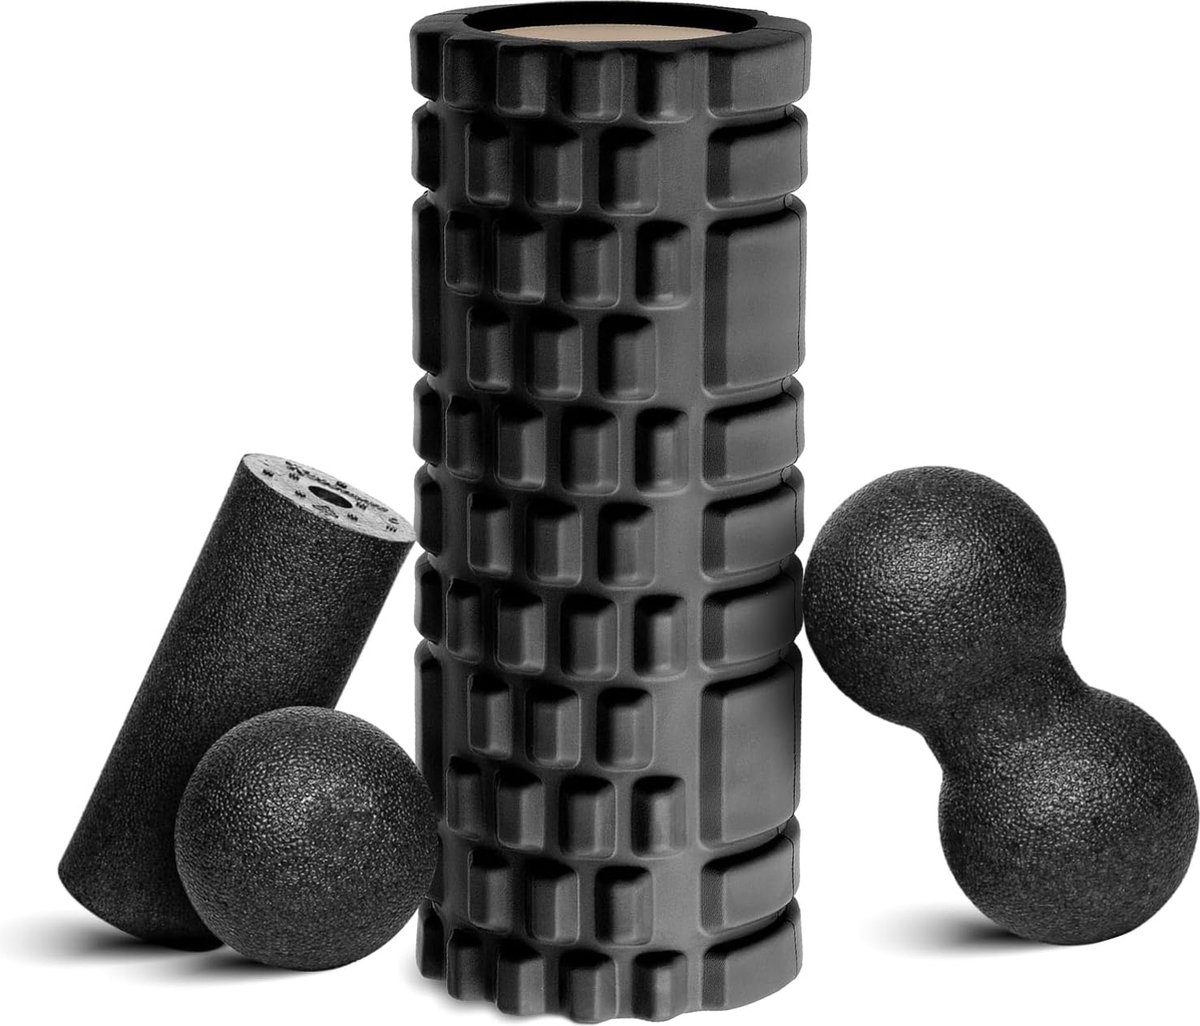 Fasciarol fasciabal foam roller-fasciarol set, 33 x 14 cm fasciarol, zwarte mini-rol L 15 x D6 cm, fasciabal D8 cm en duo-bal D8 cm in set, fasciabal miniset carbon (zwart upgrade)